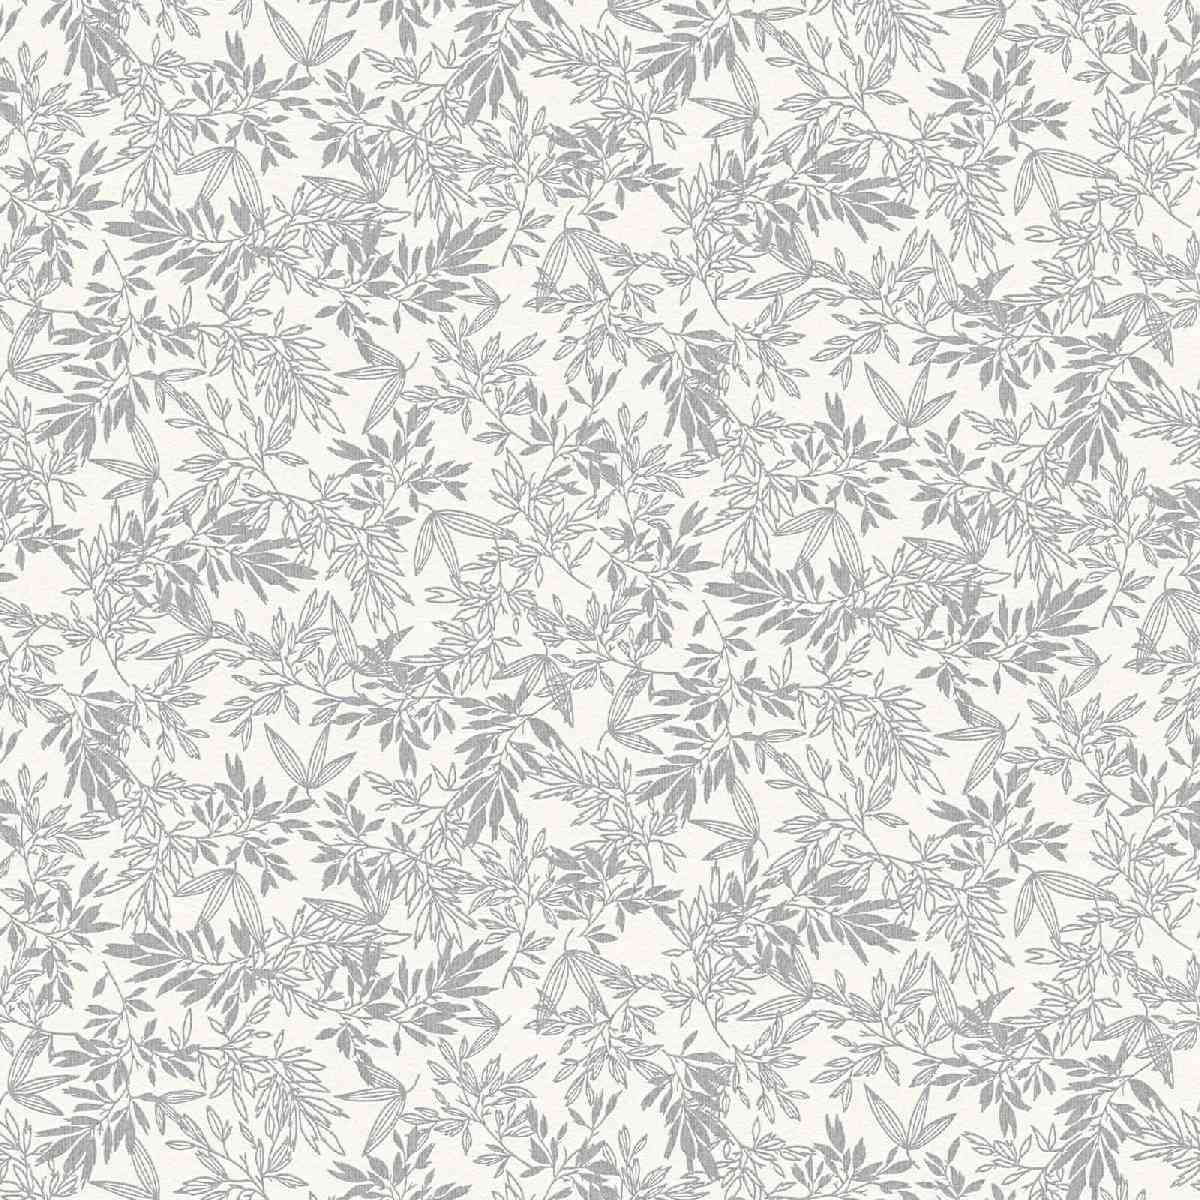 Vliestapete Attractive II 390281 - Floral Muster - Grau, Weiß